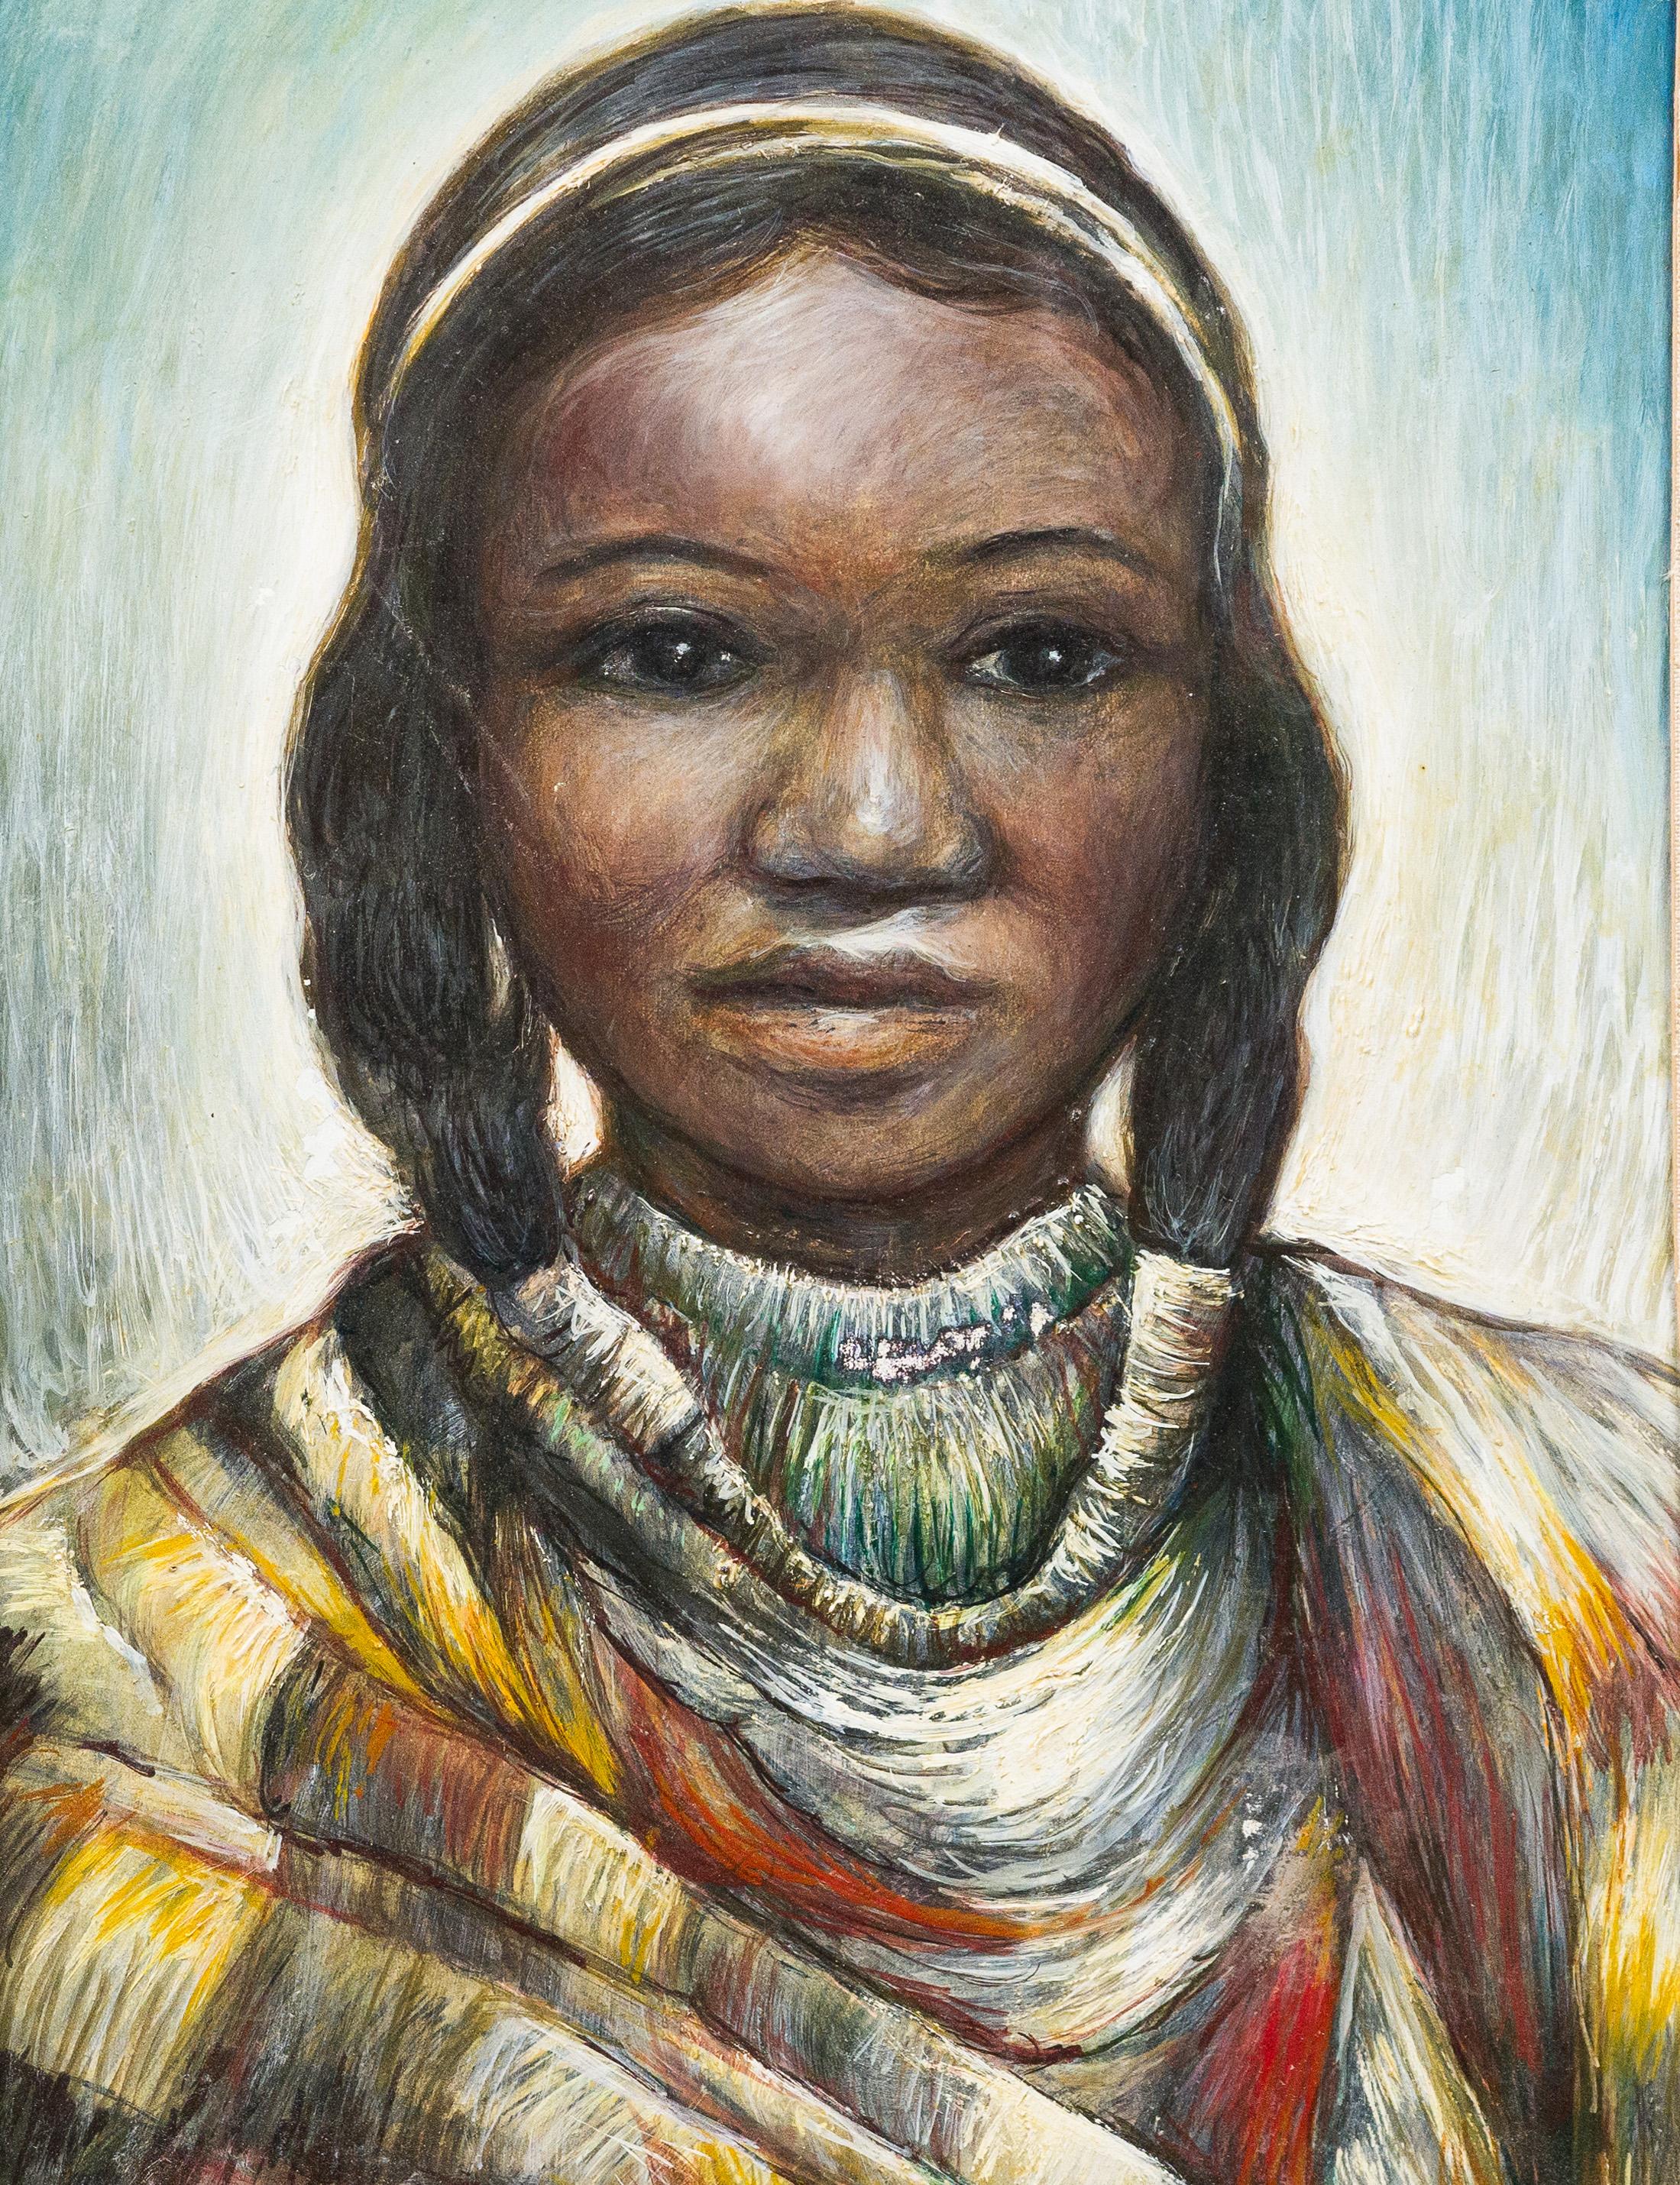 Gerahmtes Porträtgemälde der amerikanischen Impressionisten Taos School in New Mexico, gerahmt (Braun), Portrait Painting, von Unknown